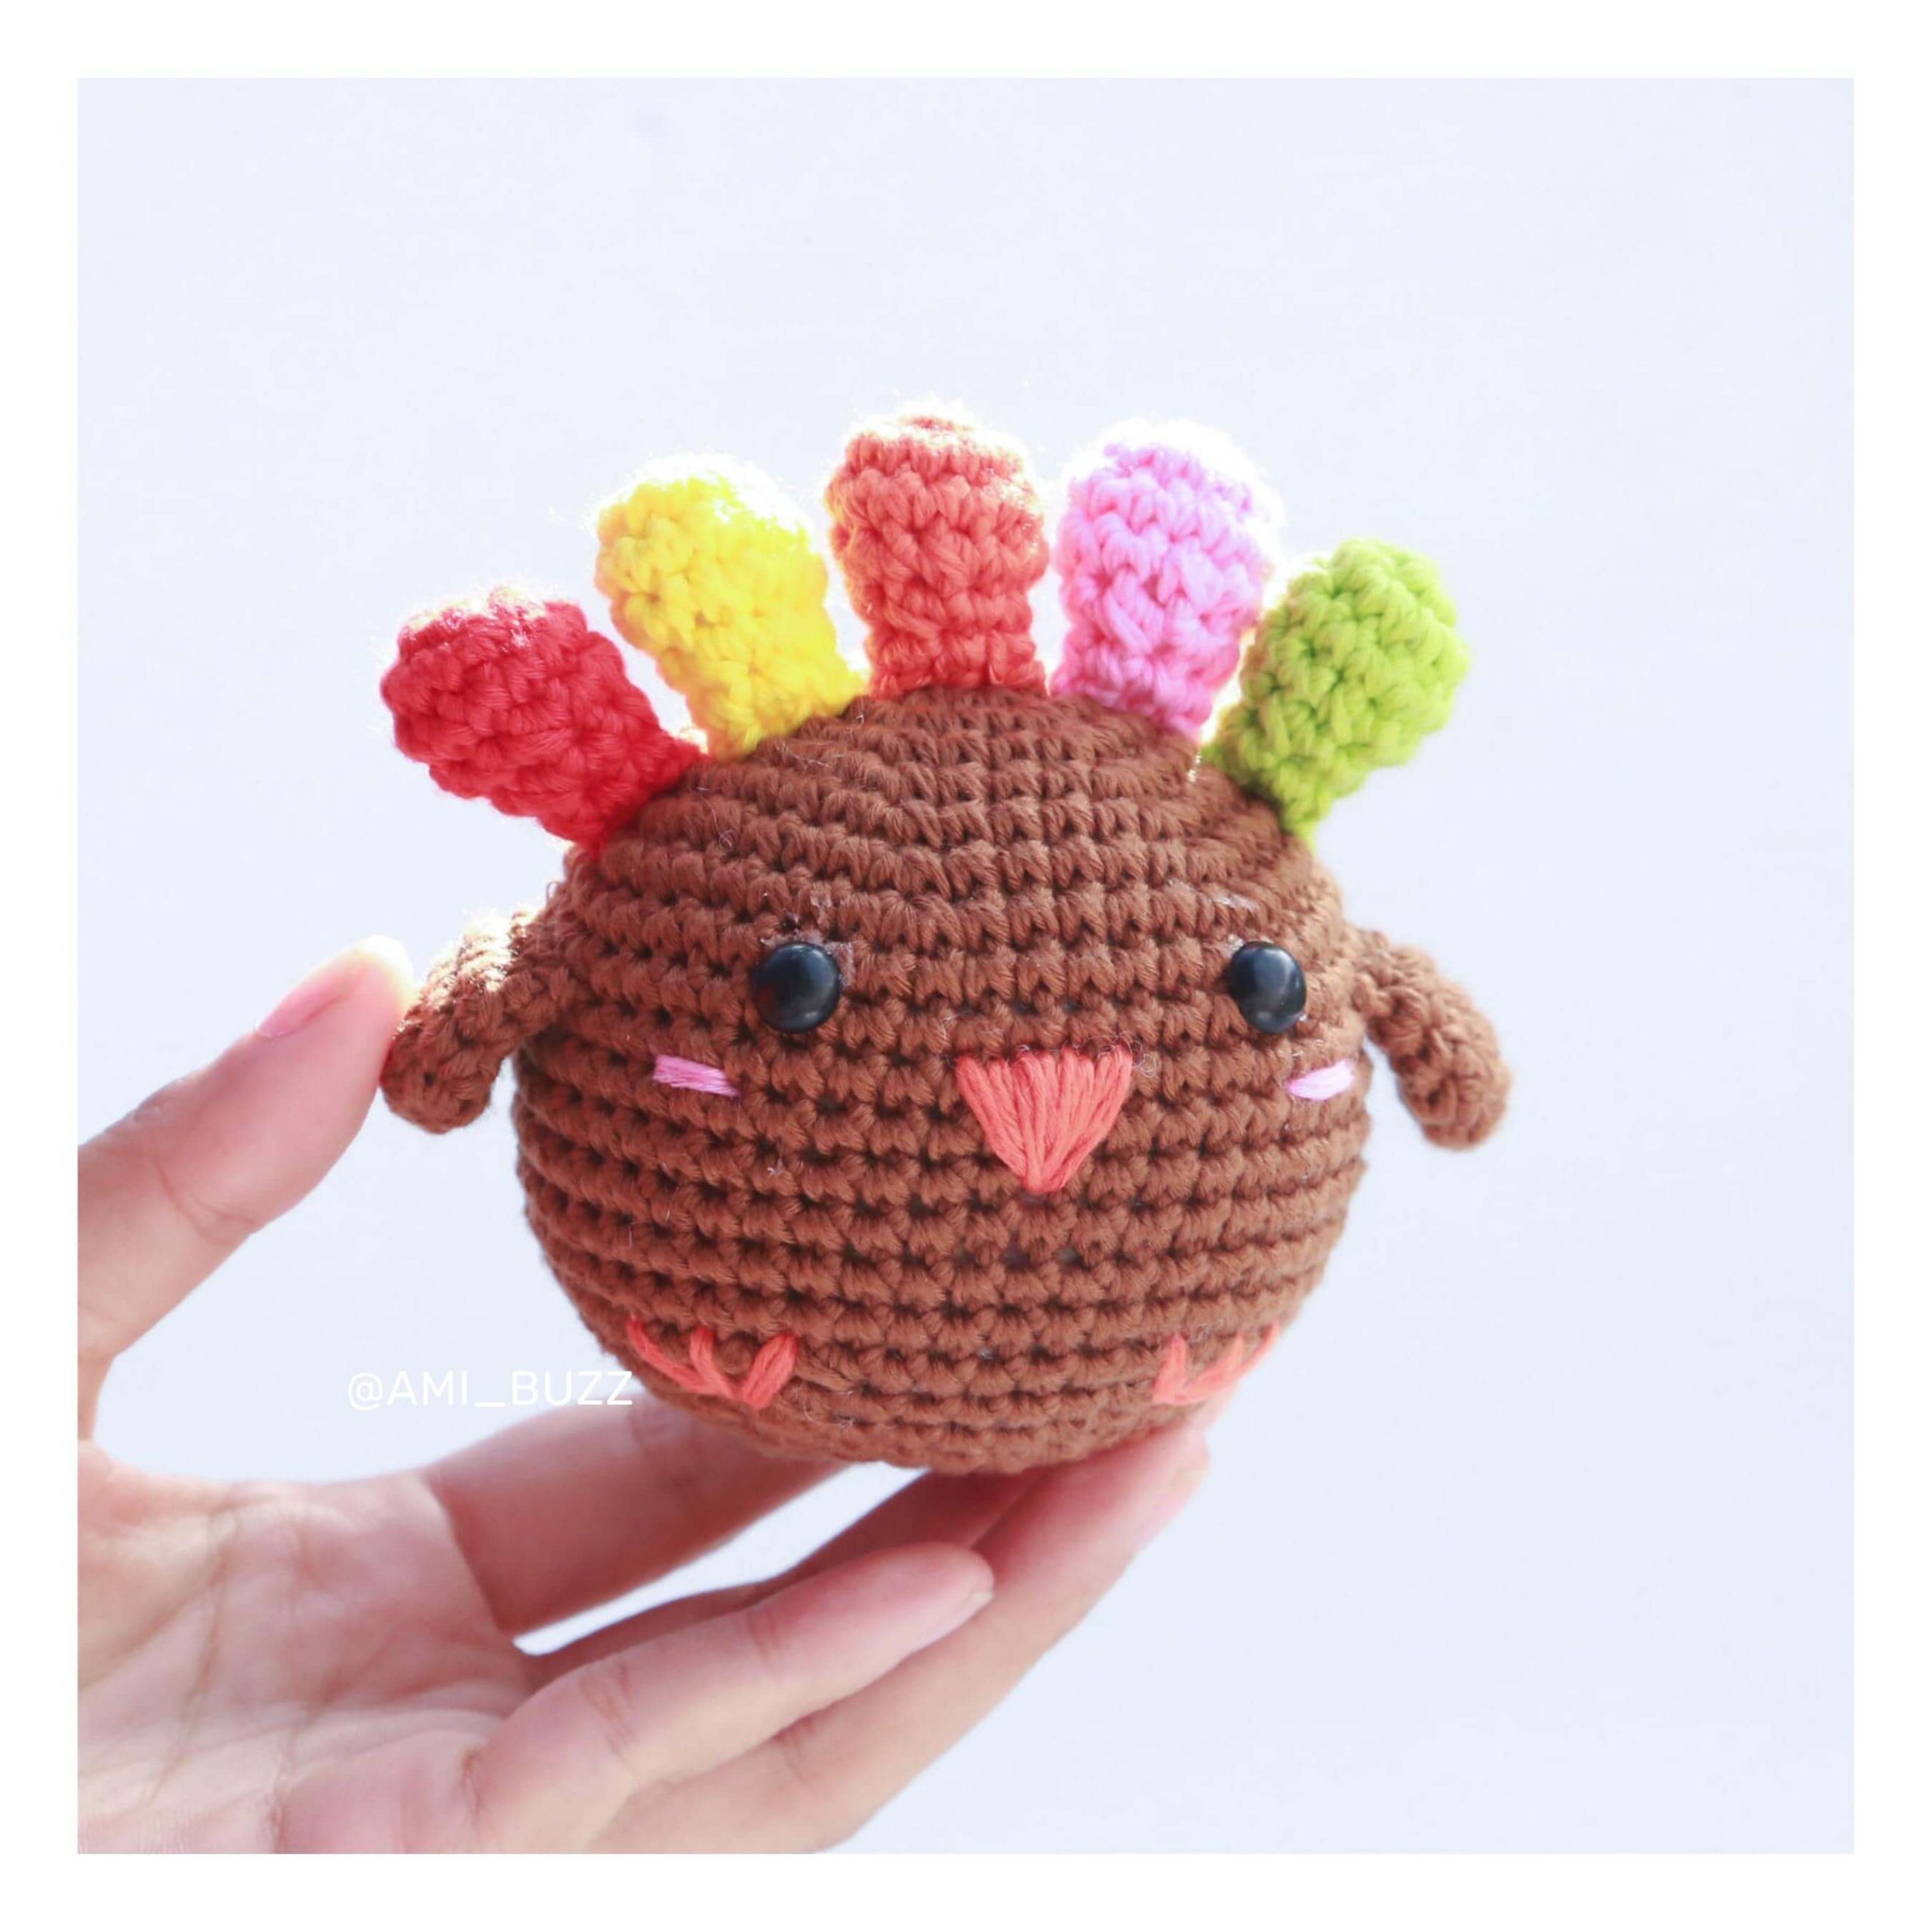 chicken-amigurumi-crochet-pattern-amibuzz (11)